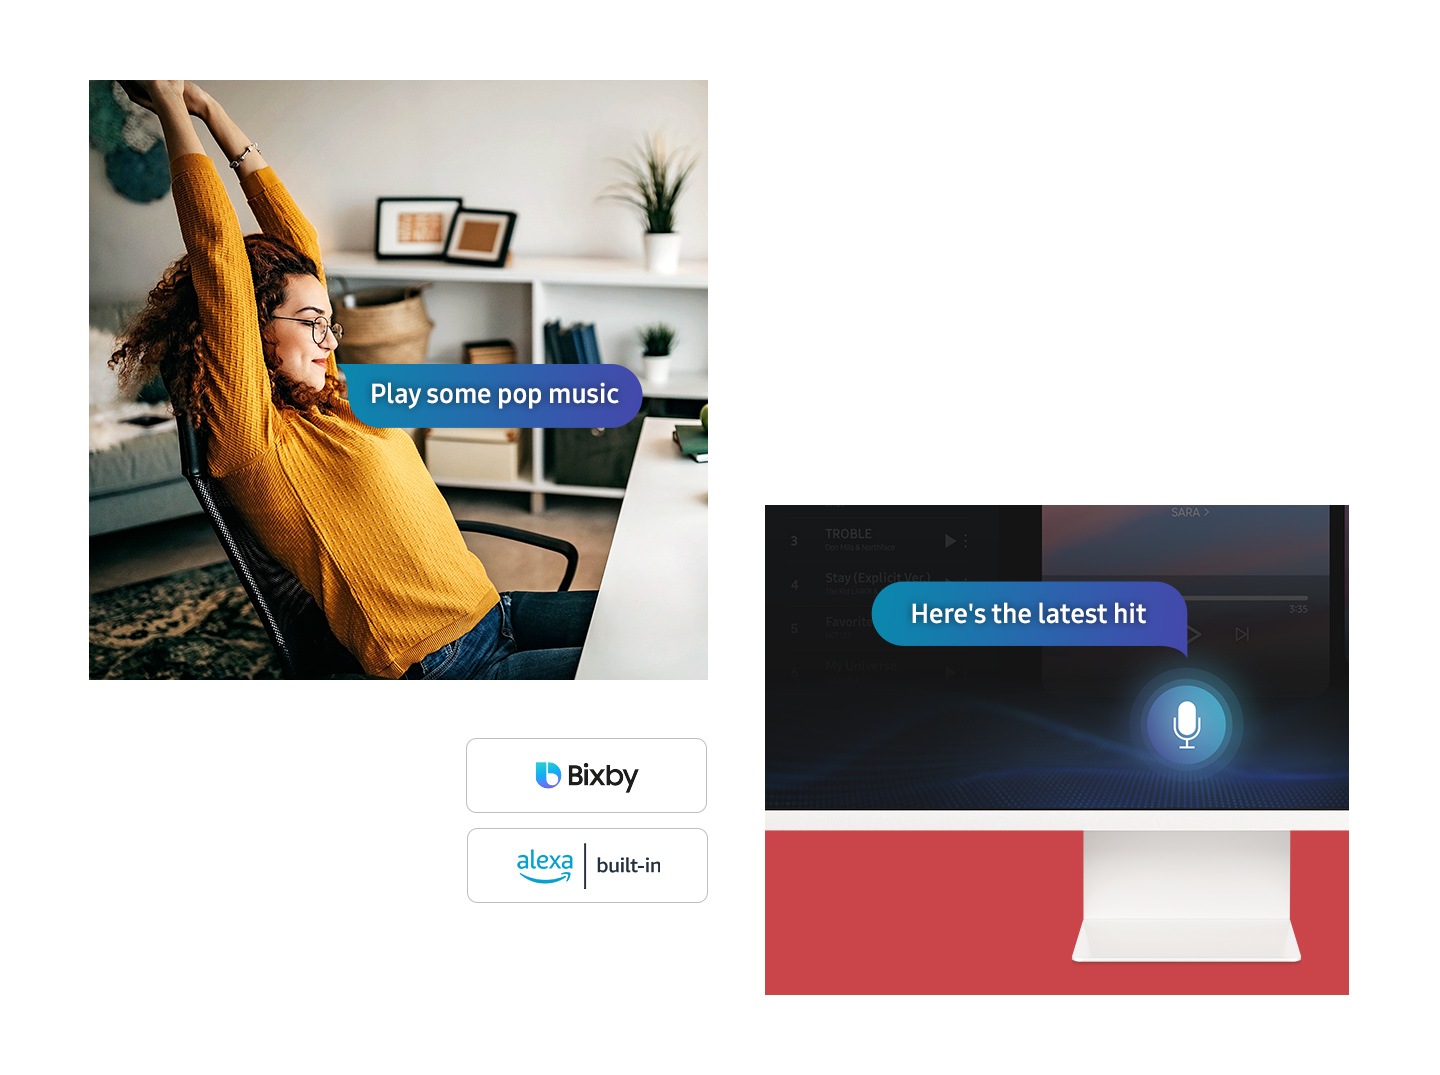 Samsung Smart Monitor M8 จอคอม สมาร์ททีวี 32 นิ้ว ที่มีฟีเจอร์ Far Field Voice ผู้ช่วยคำสั่งเสียง รองรับกับทั้ง Bixby และ Amazon Alexa. ผู้หญิงคนหนึ่งนั่งบนเก้าอี้ที่โต๊ะทำงาน ในกล่องคำพูดมีข้อความ เล่นเพลงป๊อปให้ฟังหน่อย